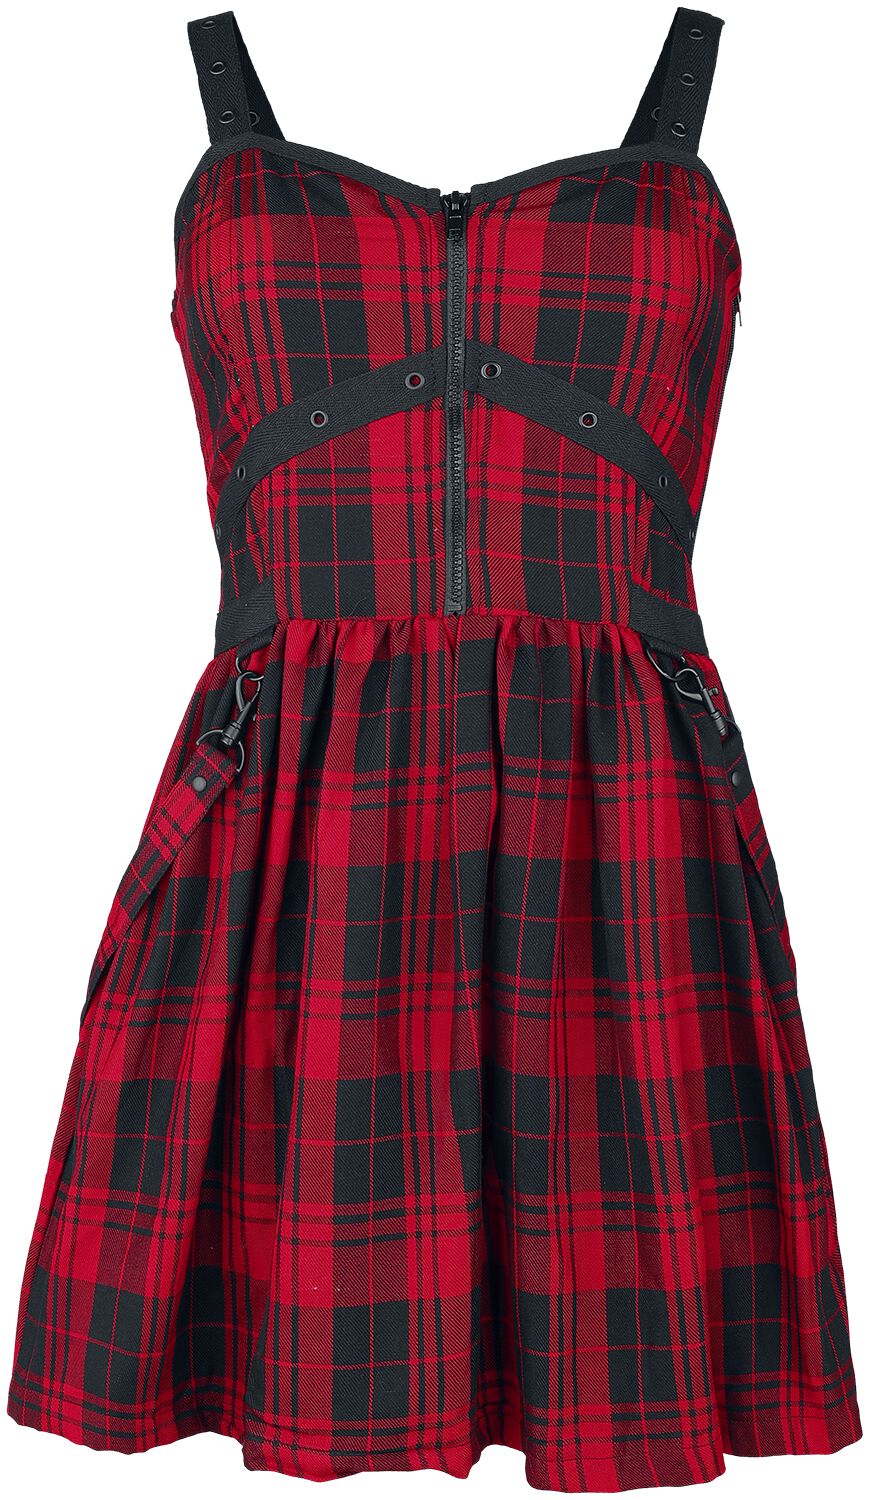 Heartless - Gothic Kurzes Kleid - Eclipse Dress - XS bis XXL - für Damen - Größe L - schwarz/rot